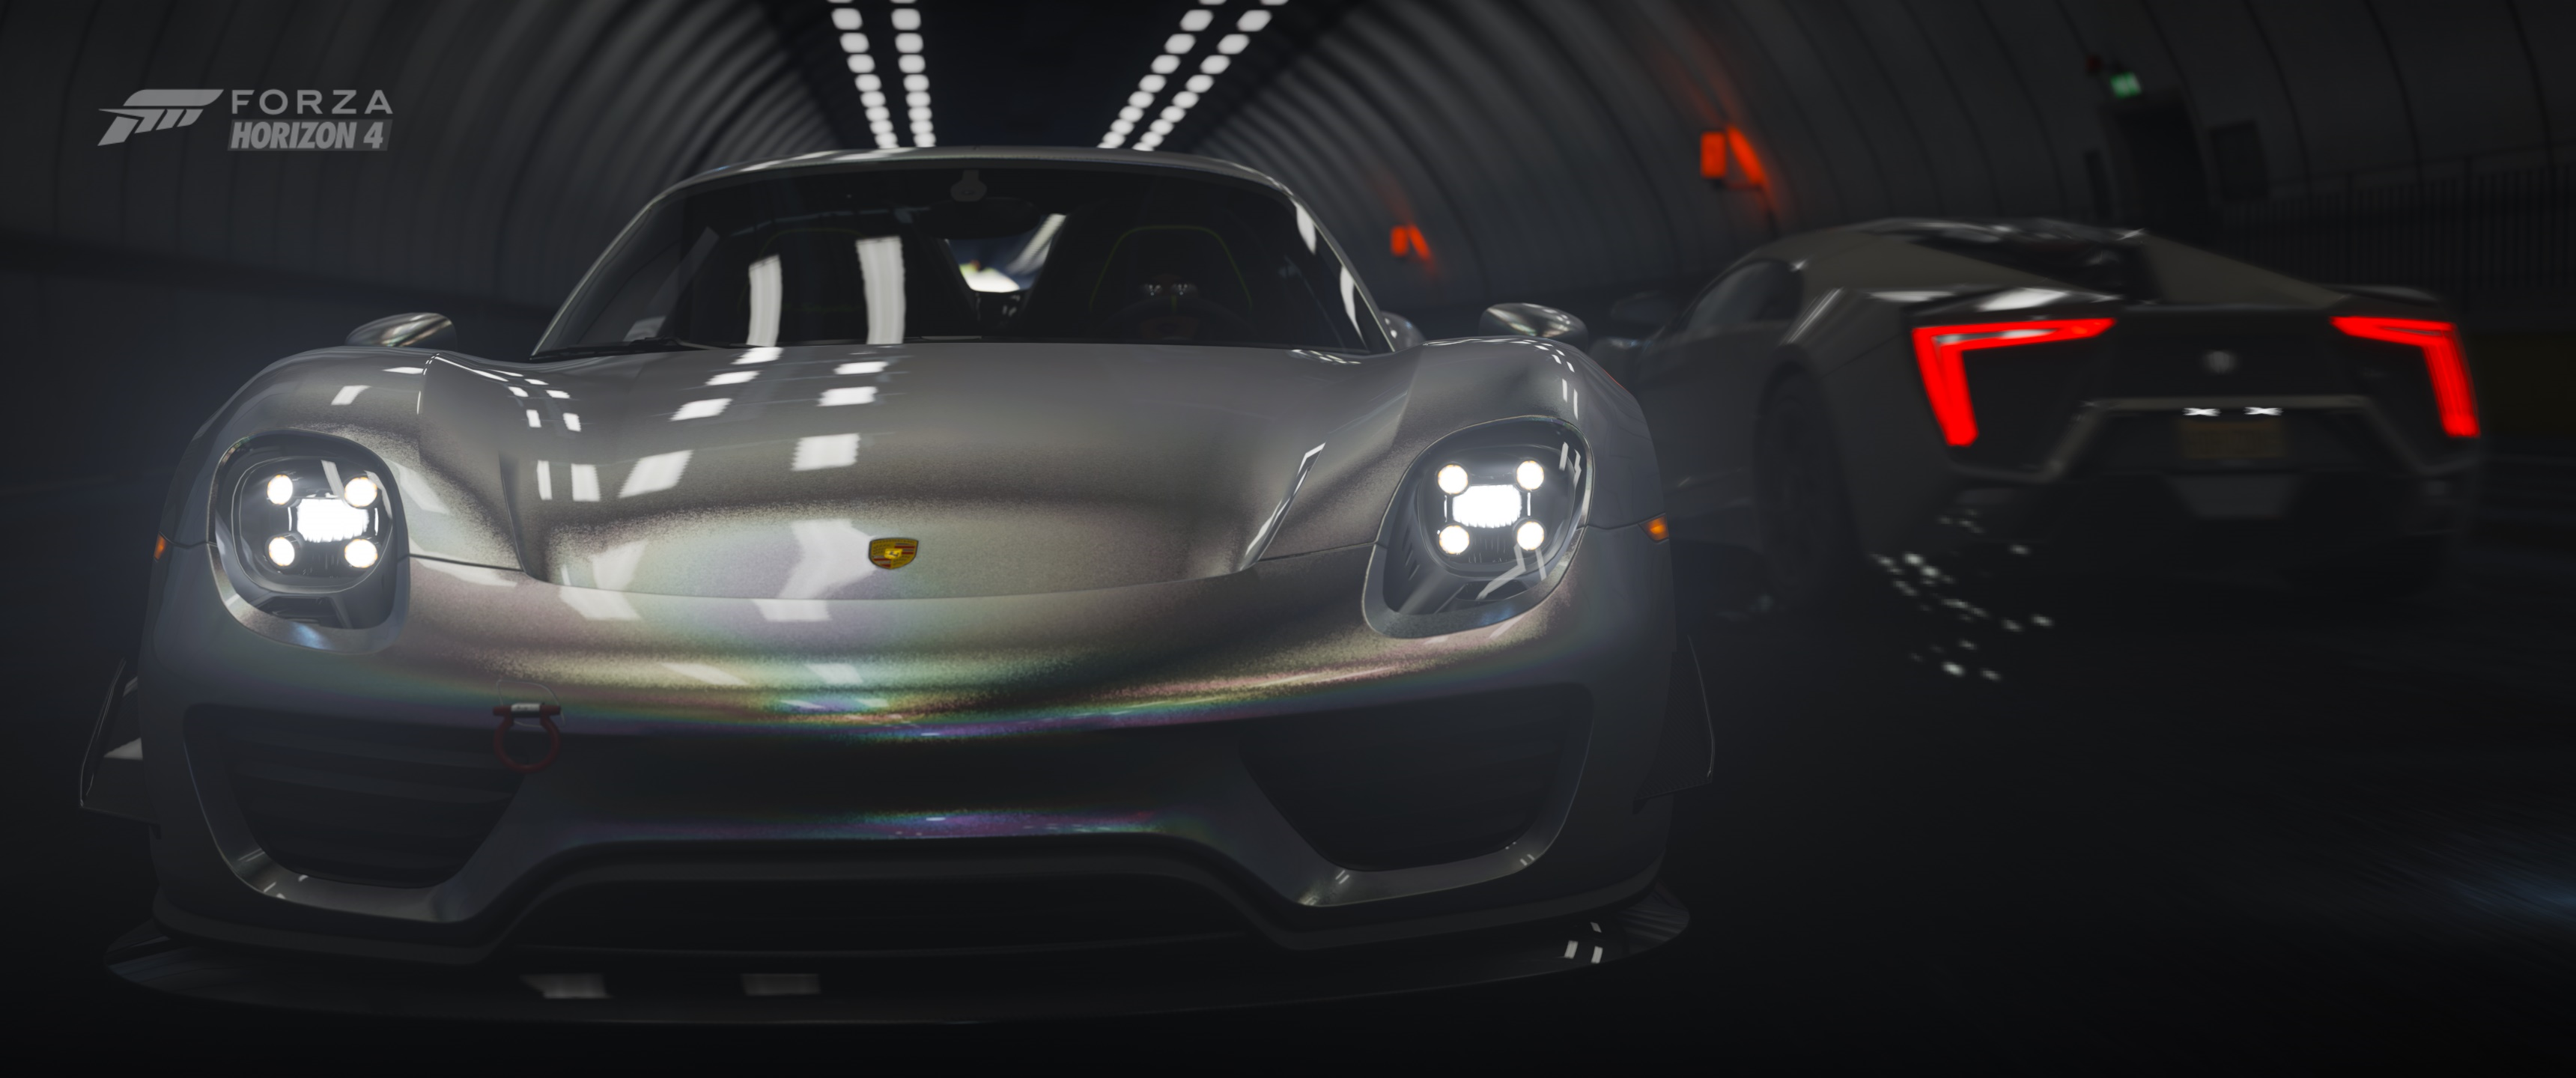 Porsche 918 Spyder Forza Forza Horizon 4 Racing Video Games Ultrawide Car 3440x1440